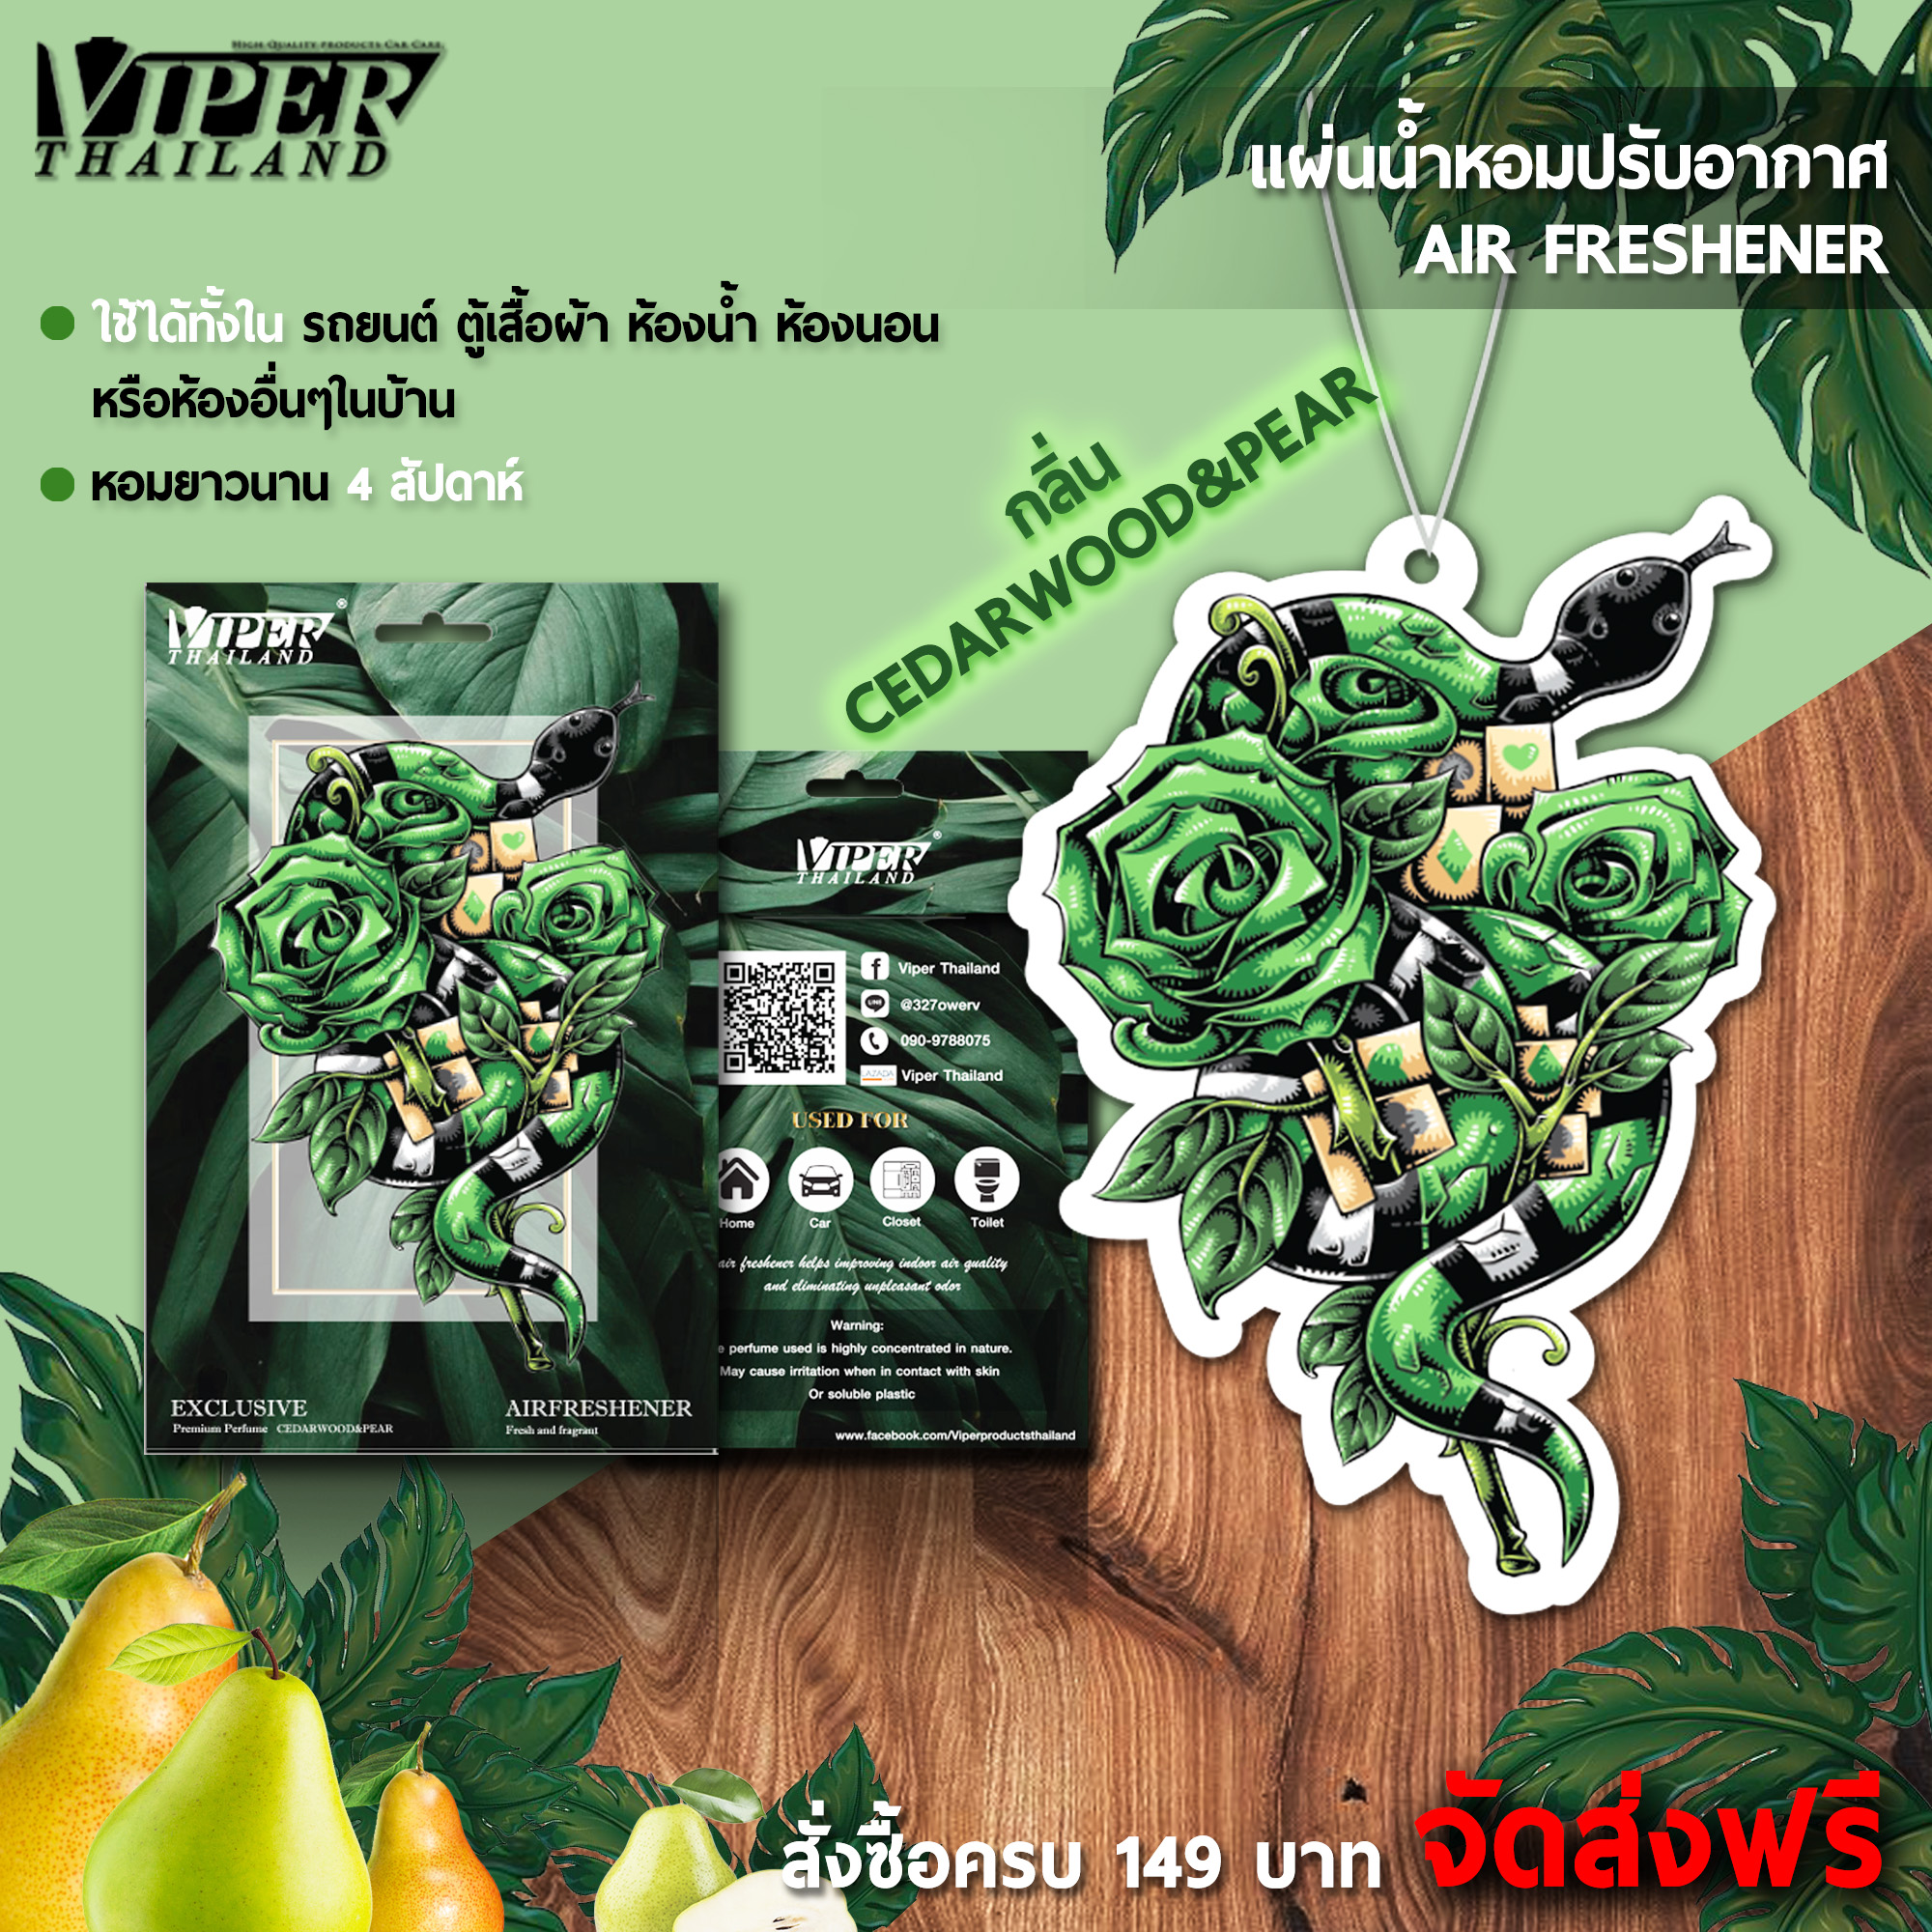 แผ่นน้ำหอมในรถ แผ่นน้ำหอมปรับอากาศ น้ำหอมในรถยนต์ Air Freshener Viper Thailand มีให้เลือก 4 กลิ่น